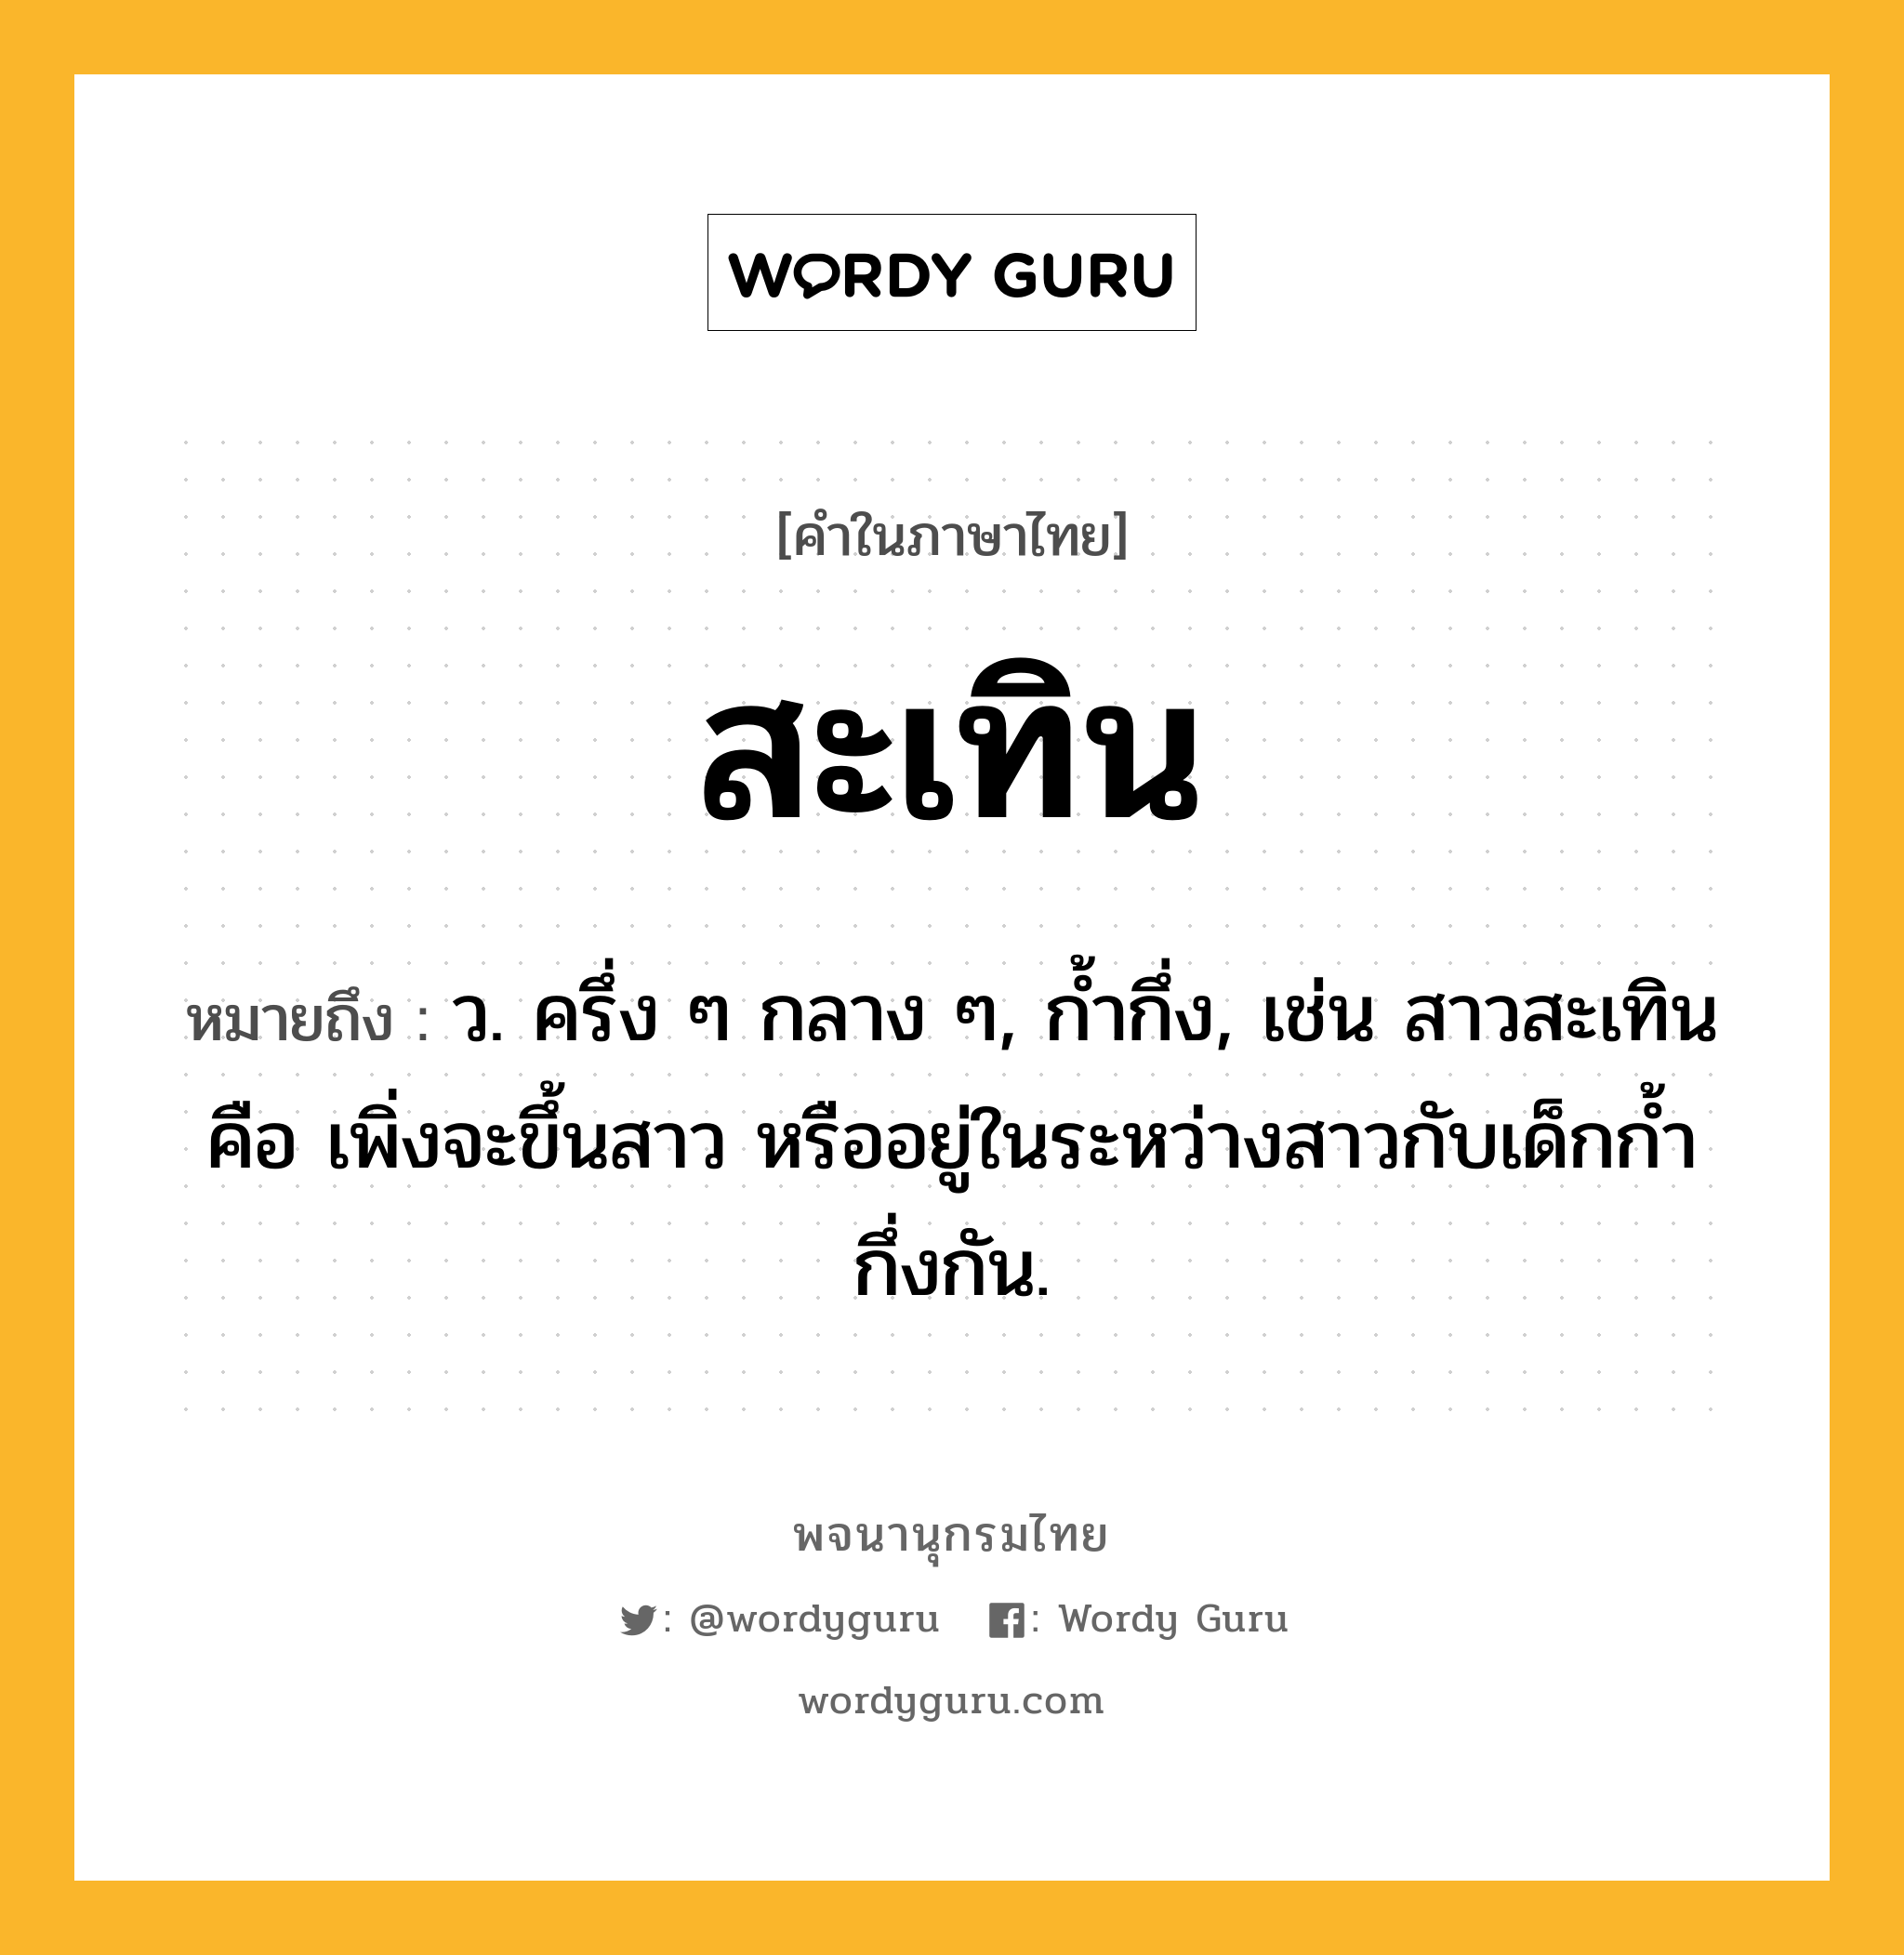 สะเทิน ความหมาย หมายถึงอะไร?, คำในภาษาไทย สะเทิน หมายถึง ว. ครึ่ง ๆ กลาง ๆ, กํ้ากึ่ง, เช่น สาวสะเทิน คือ เพิ่งจะขึ้นสาว หรืออยู่ในระหว่างสาวกับเด็กกํ้ากึ่งกัน.